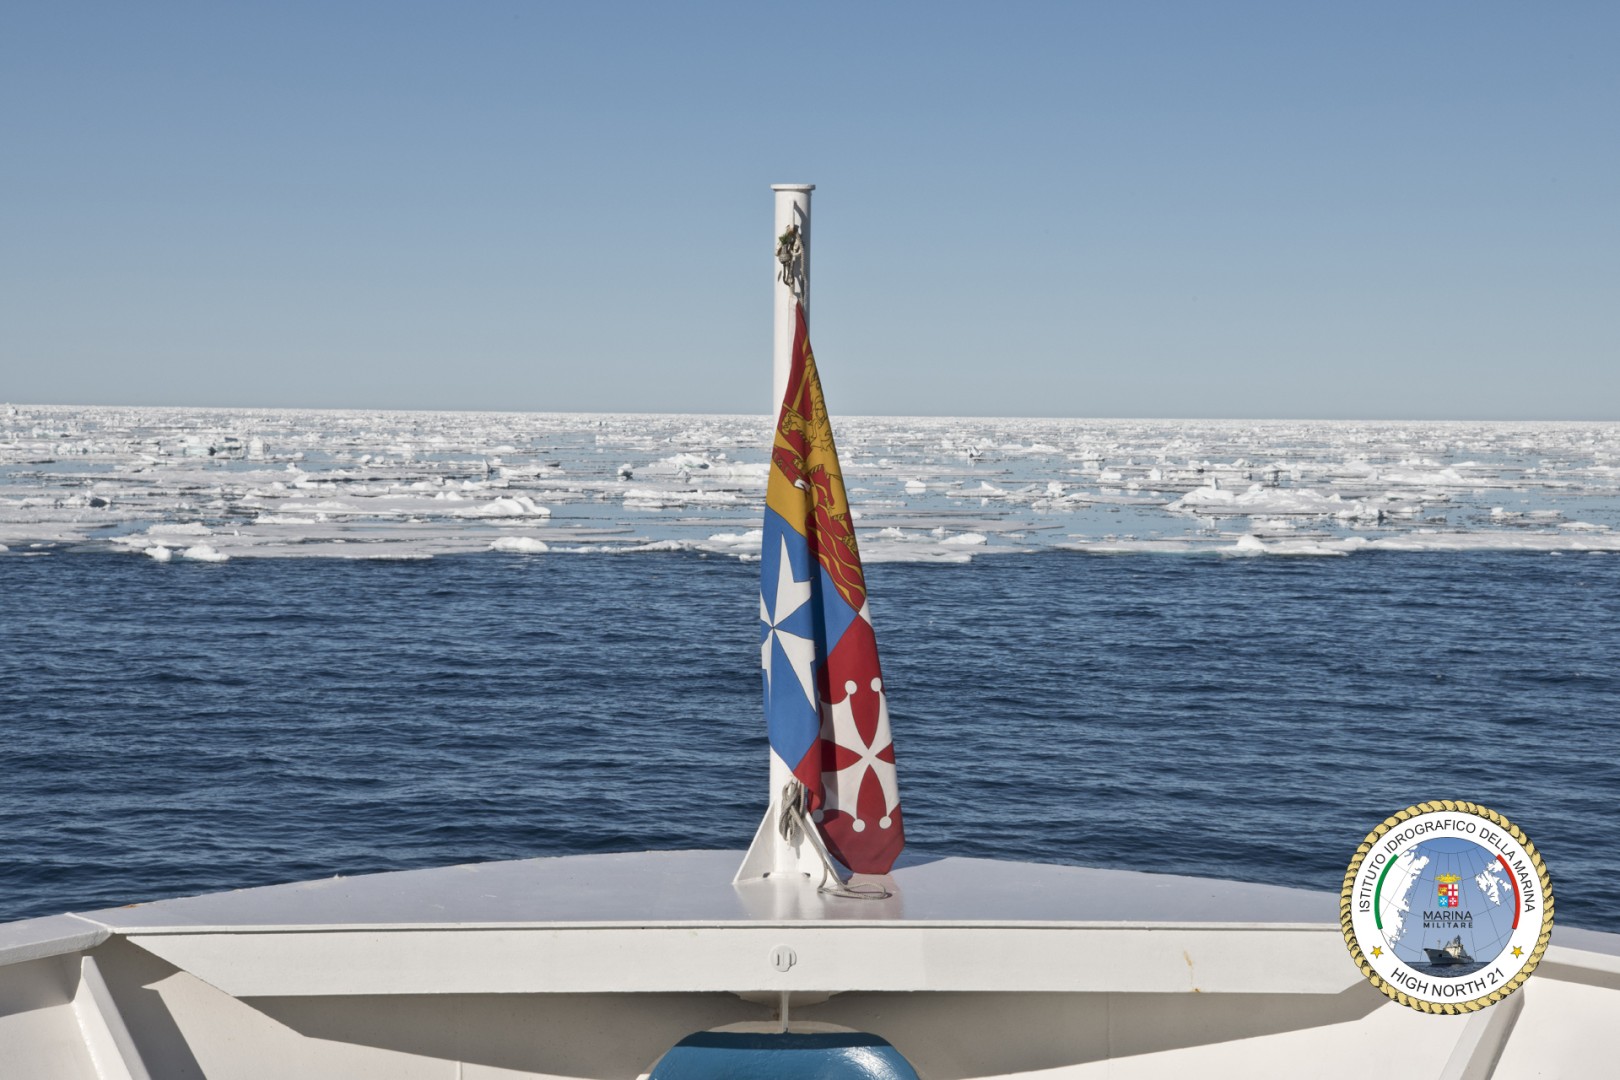 Marina Militare: inizia la campagna Artica High North 2022